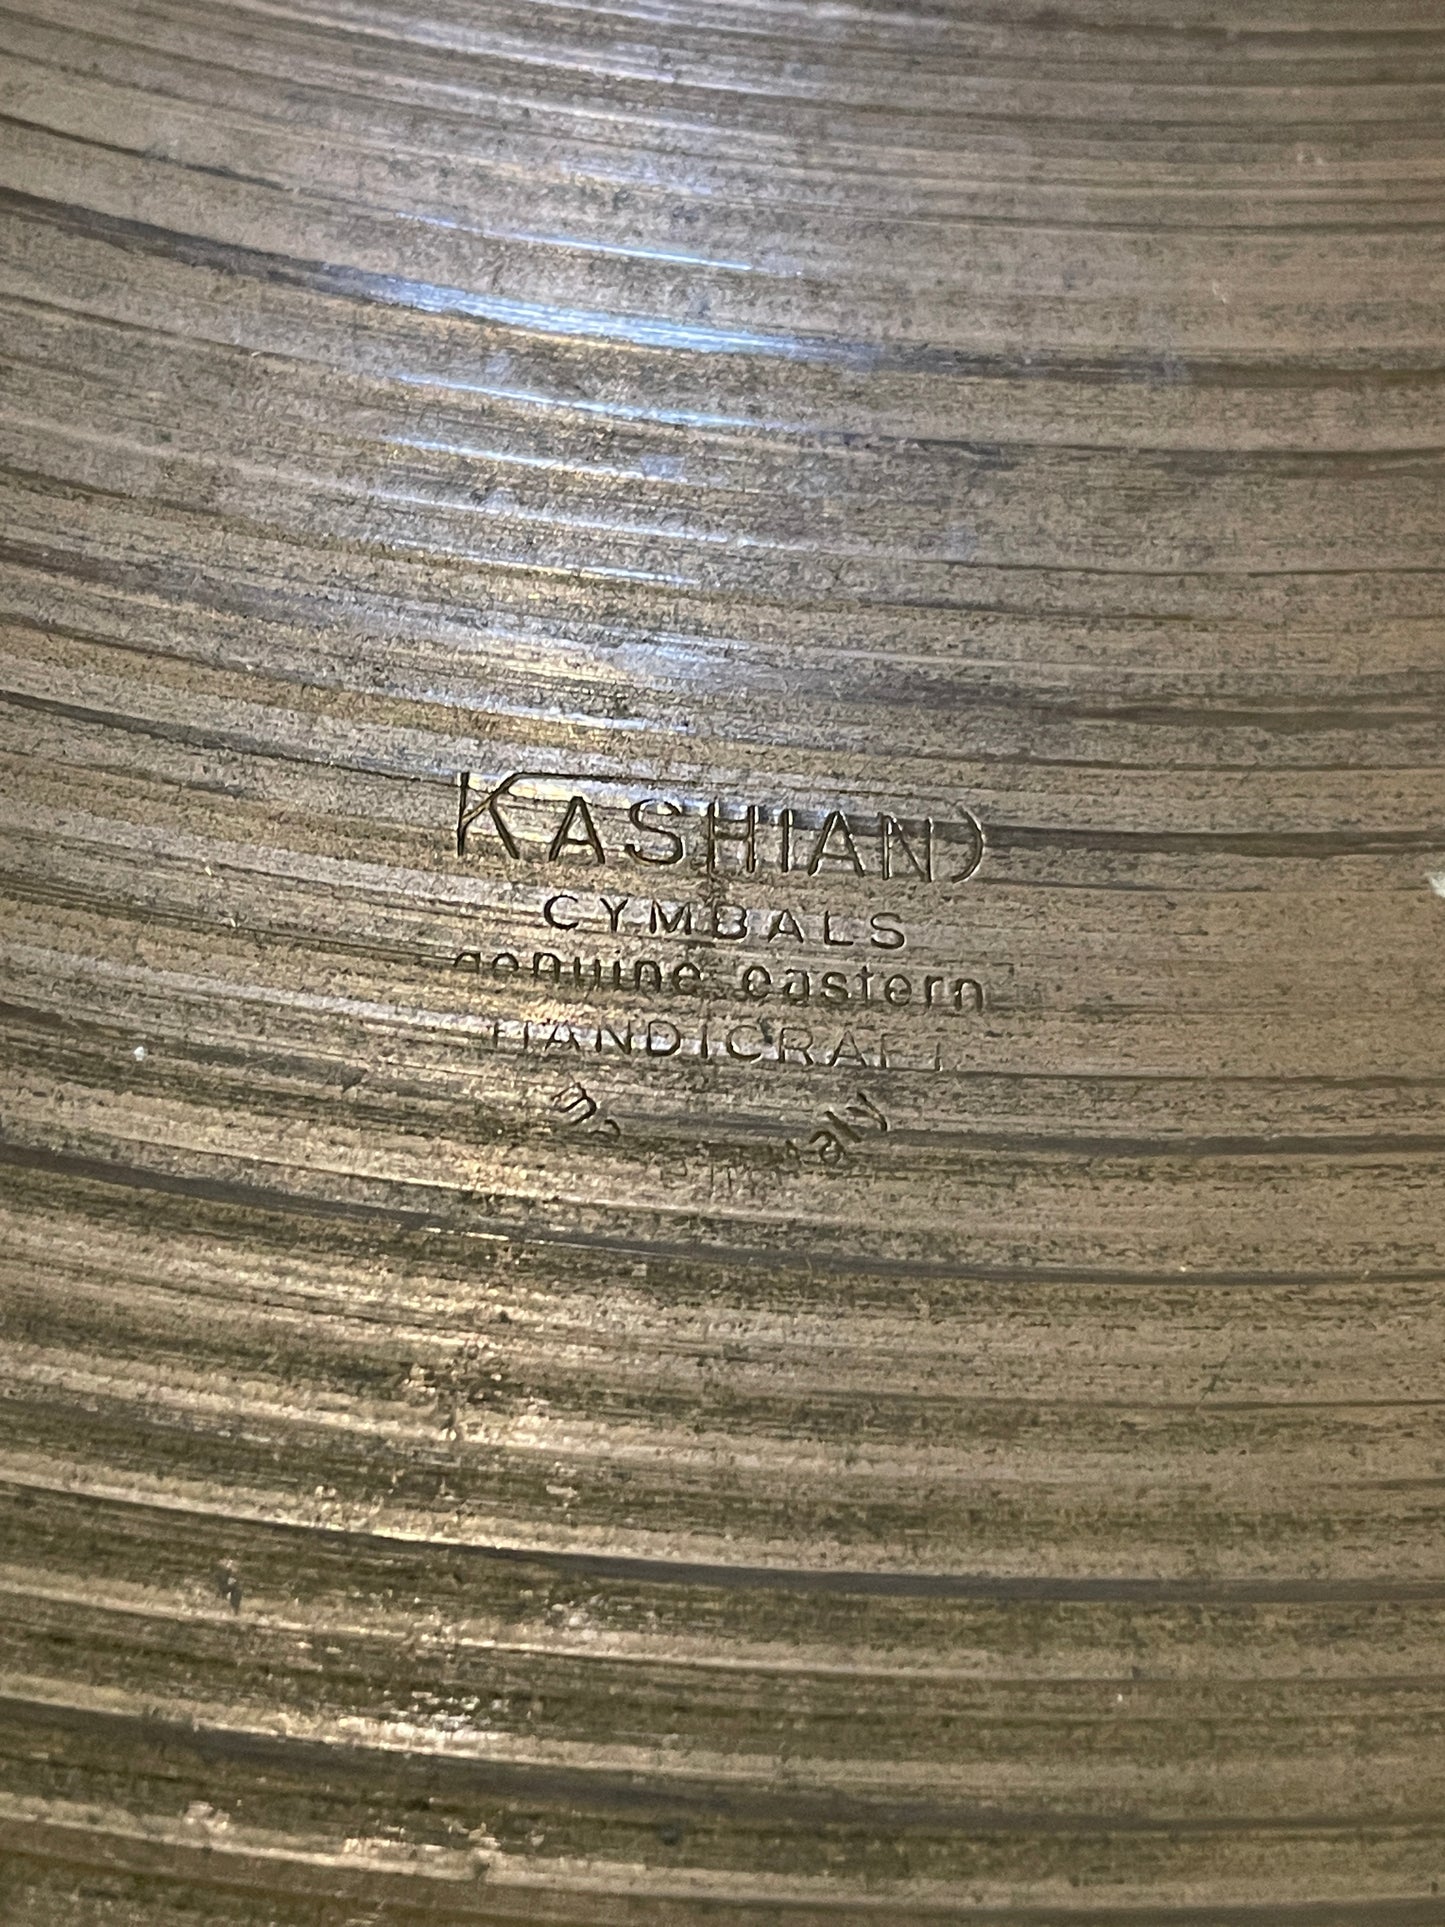 22" Vintage Kashian Ride Cymbal 2946g